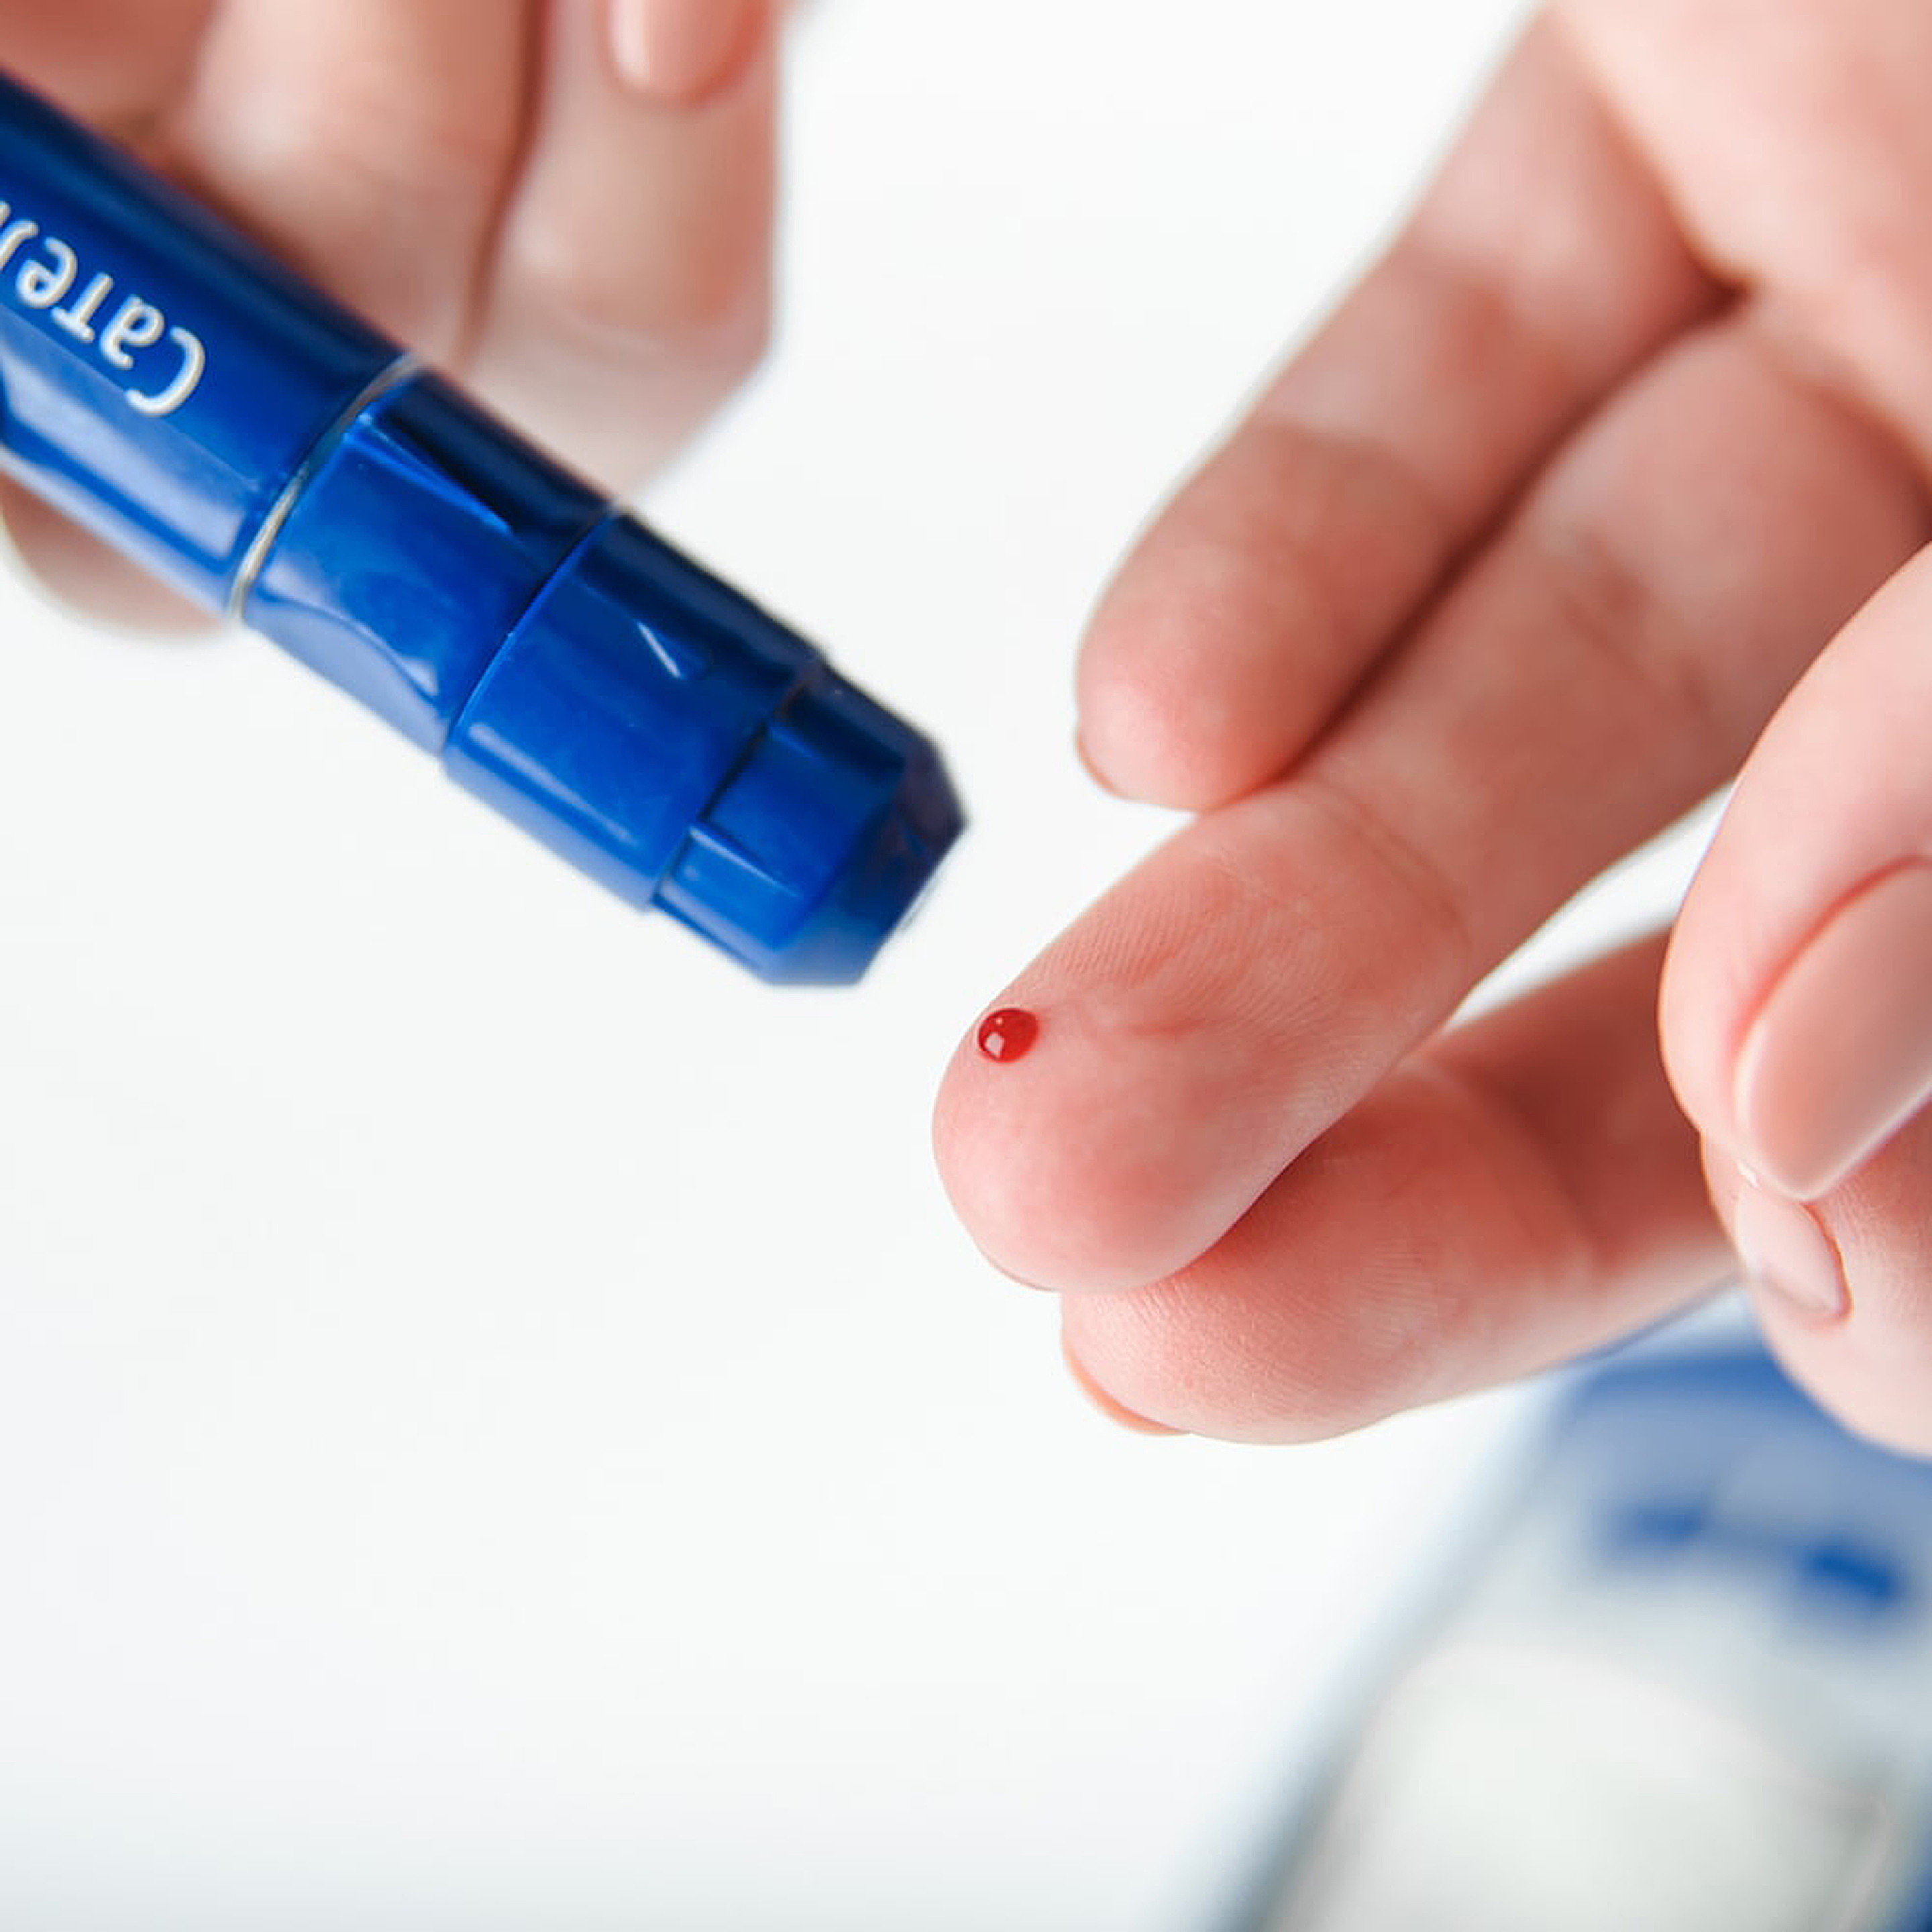 Diabetes: Finger blood glucose measurement